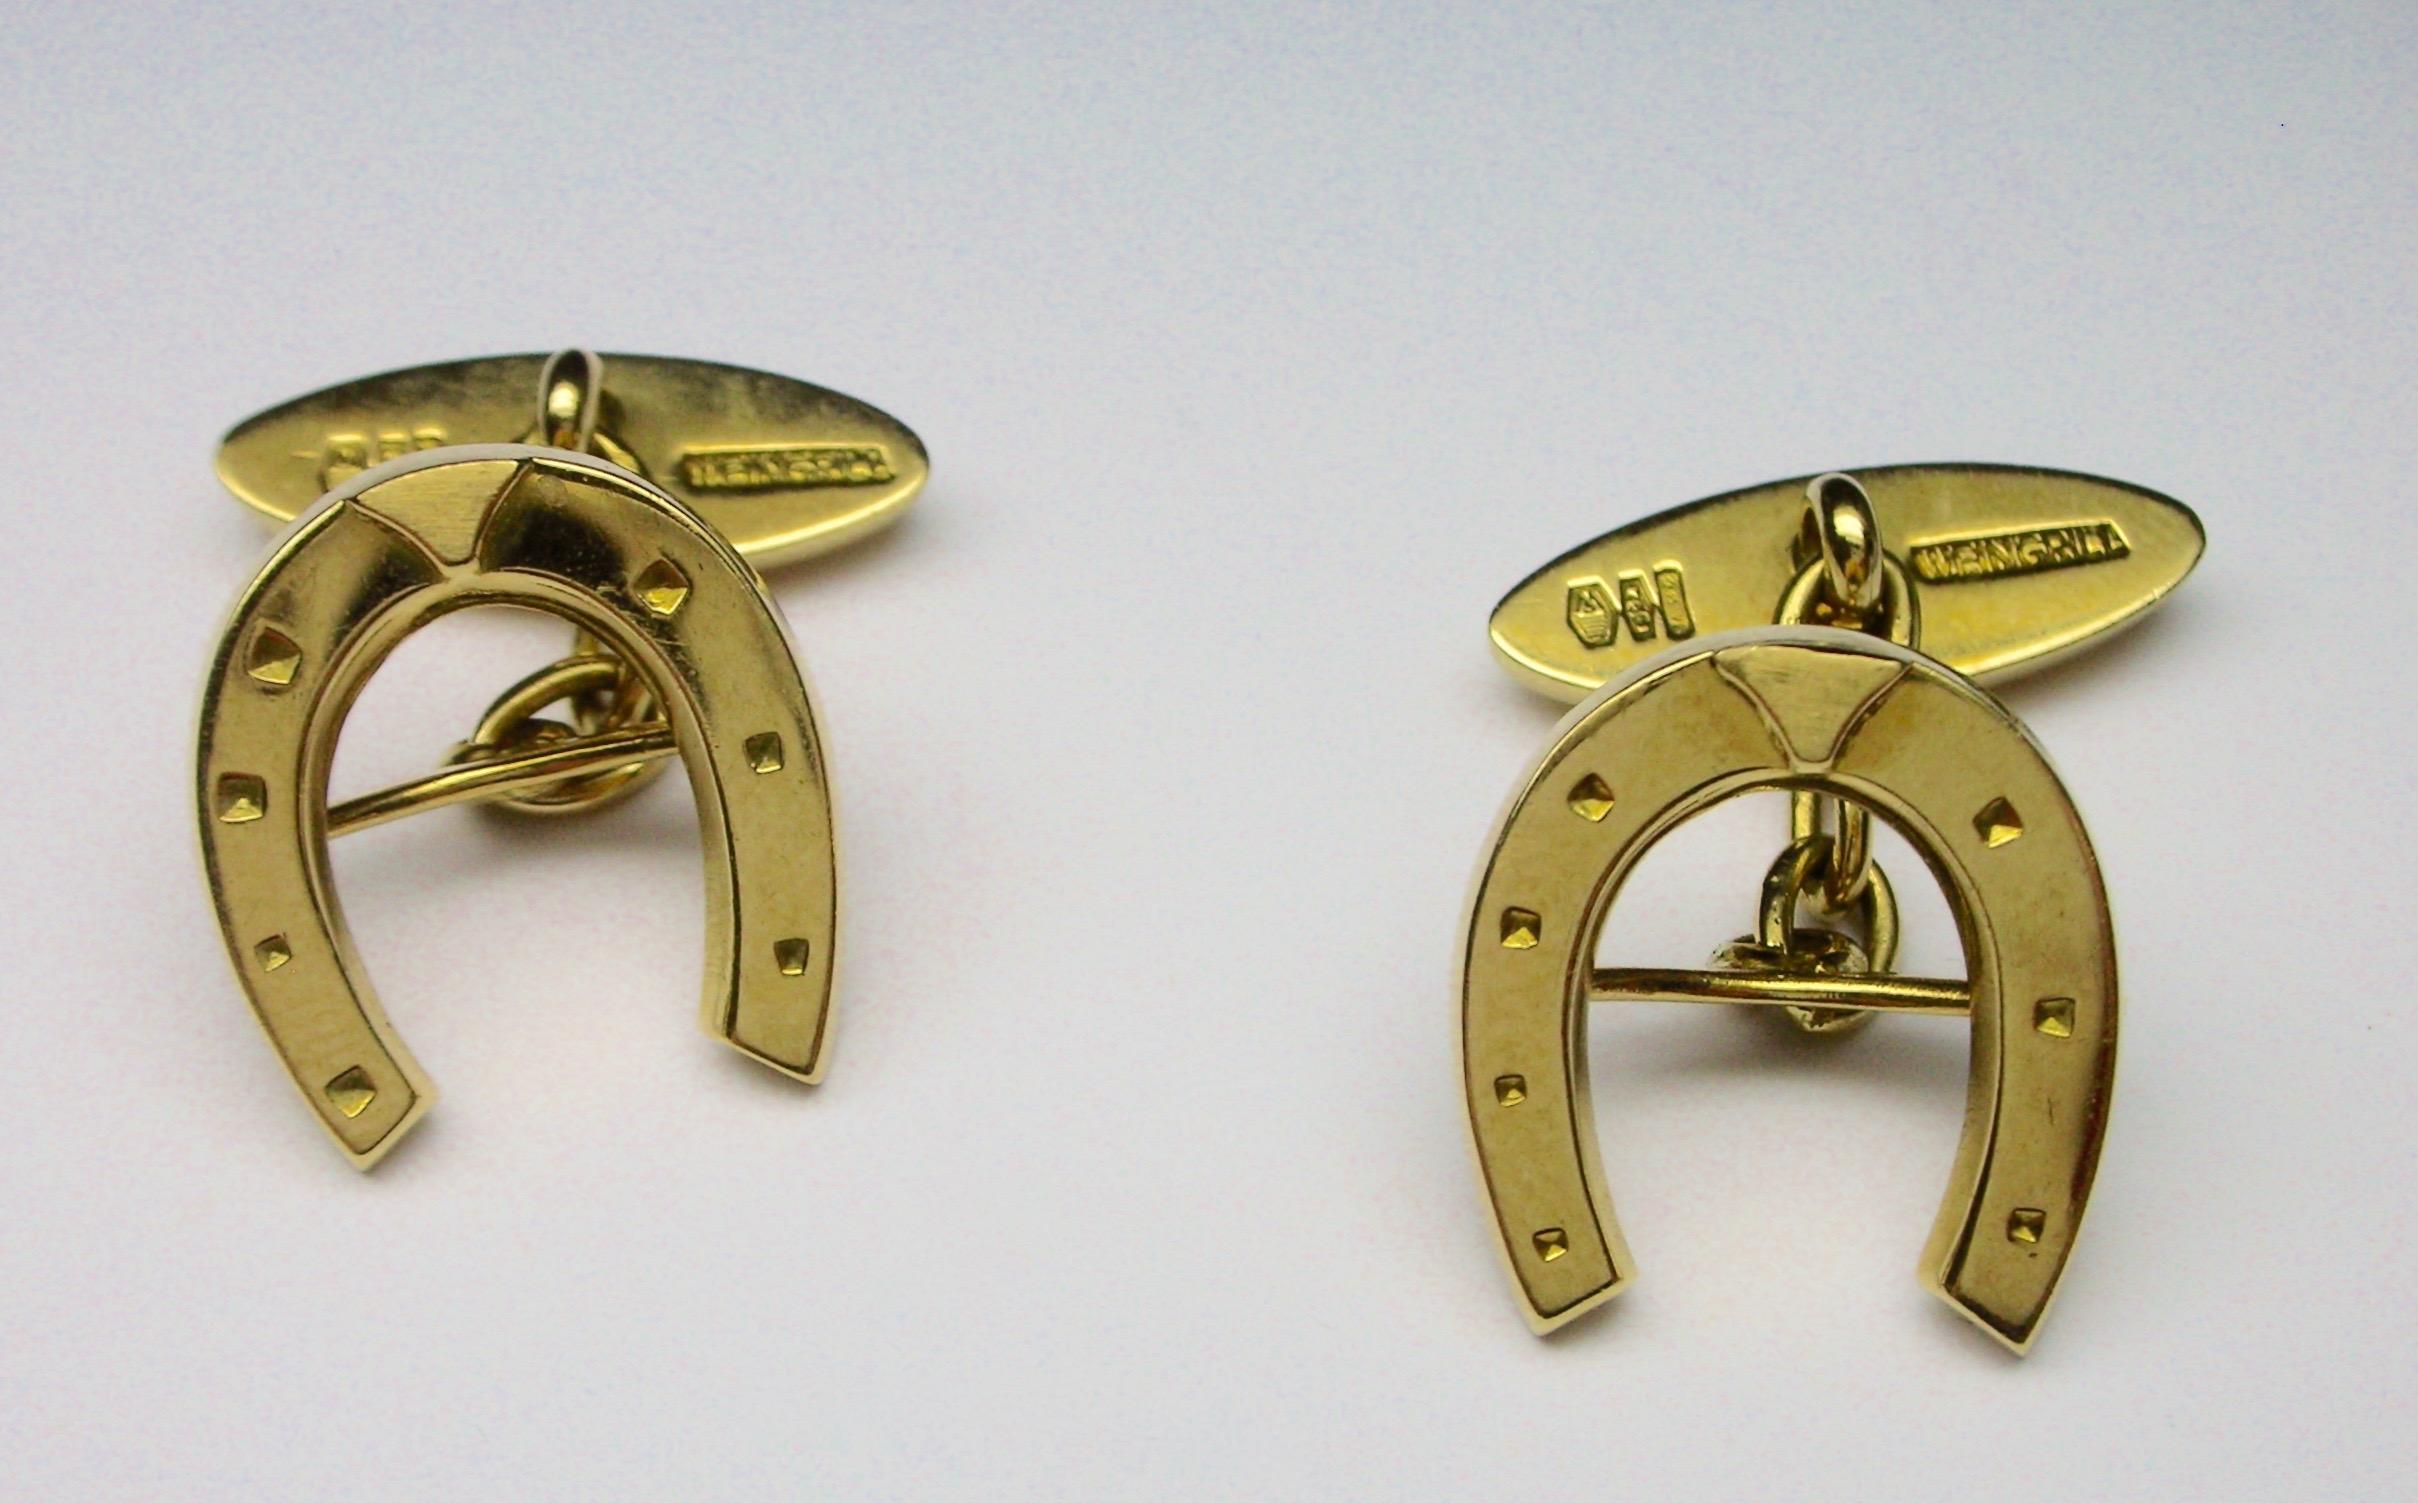 Gemelli a ferro di cavallo in oro 18KT firmati Weingrill, risalenti agli anni '80 circa, con marchio di garanzia Made in Italy. 

